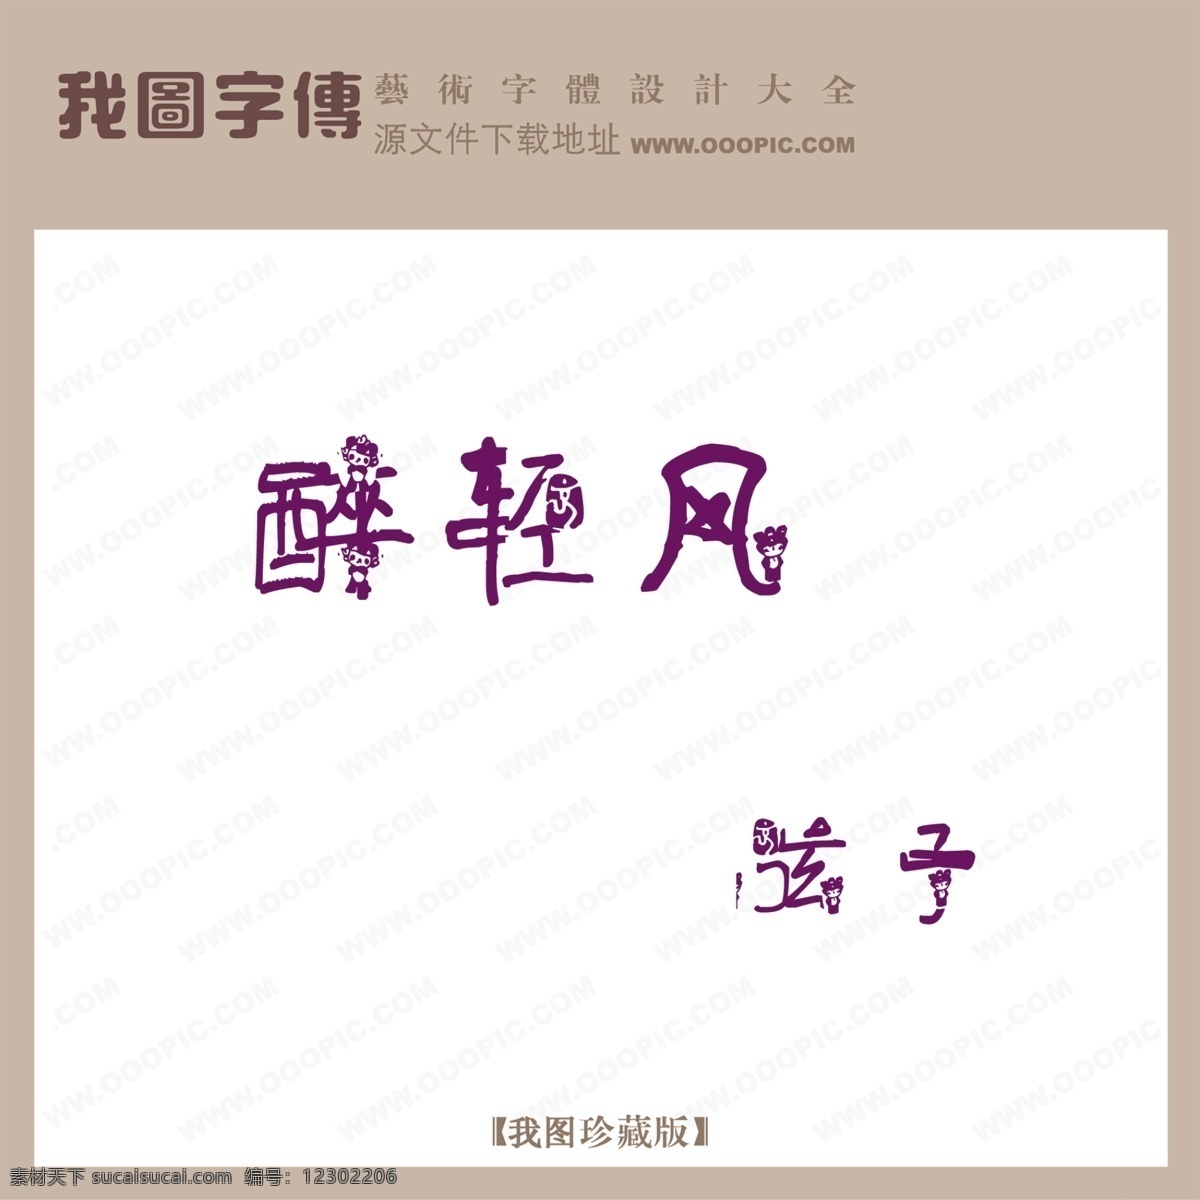 创意字体设计 非 主流 字体 设计字体下载 英文字体设计 中文字体设计 字体设计图片 字体下载 字体转换 醉 轻风 psd源文件 艺术字